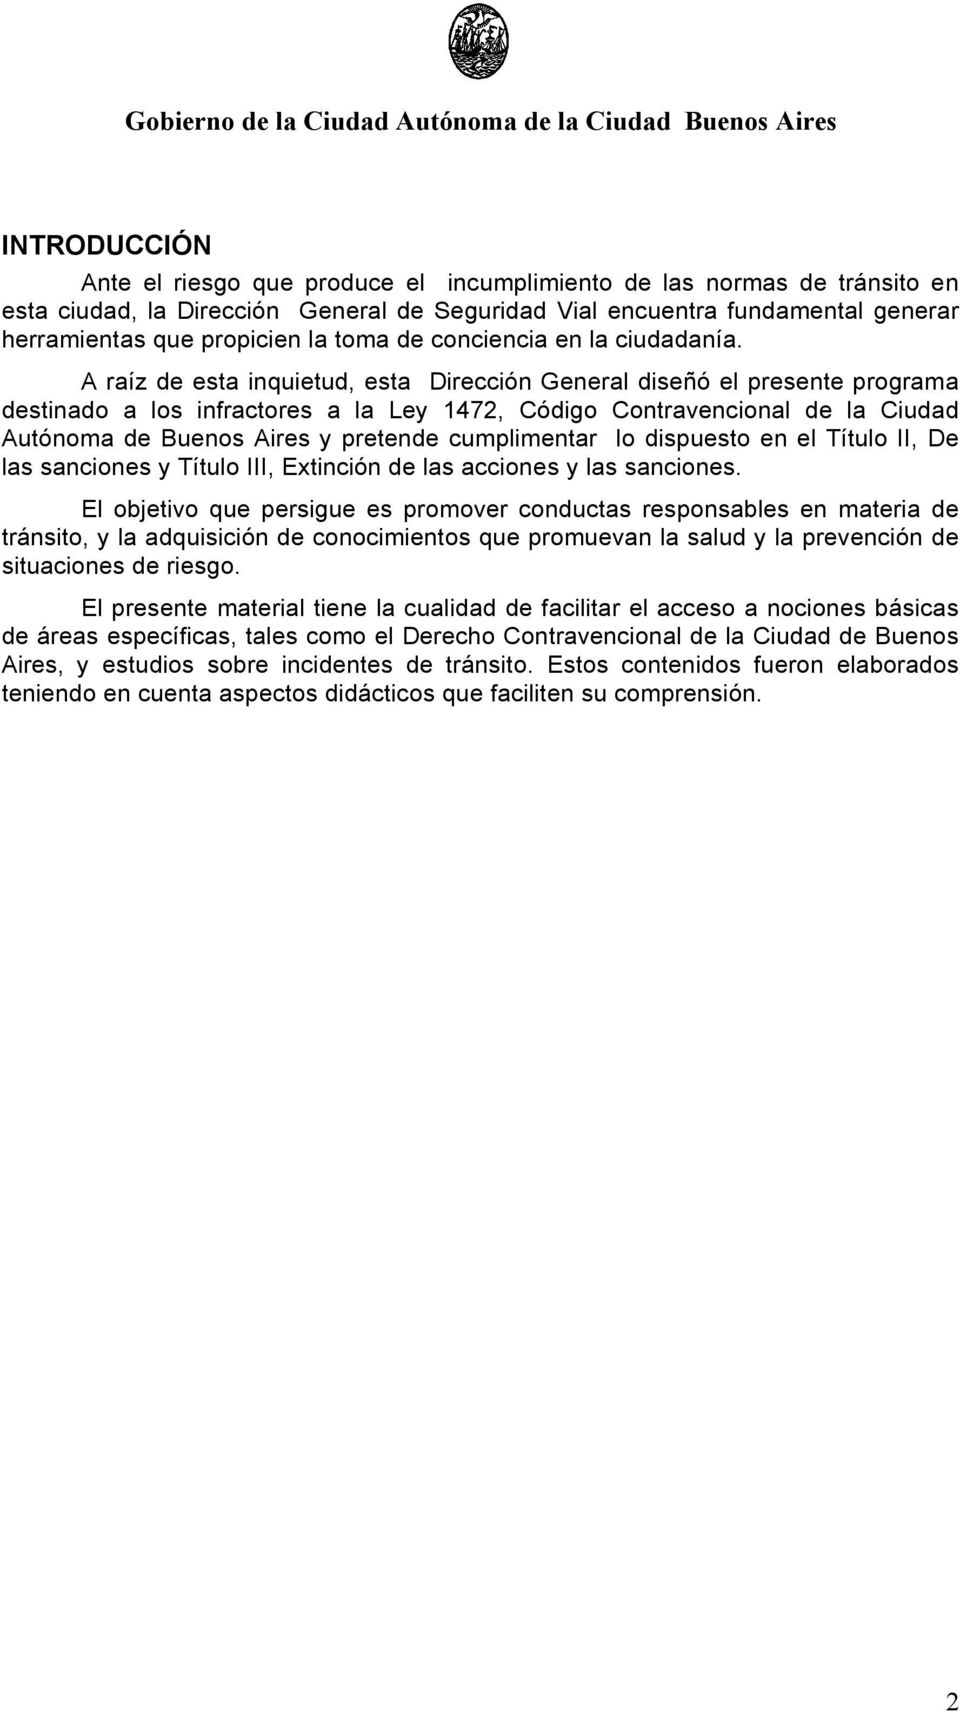 A raíz de esta inquietud, esta Dirección General diseñó el presente programa destinado a los infractores a la Ley 1472, Código Contravencional de la Ciudad Autónoma de Buenos Aires y pretende